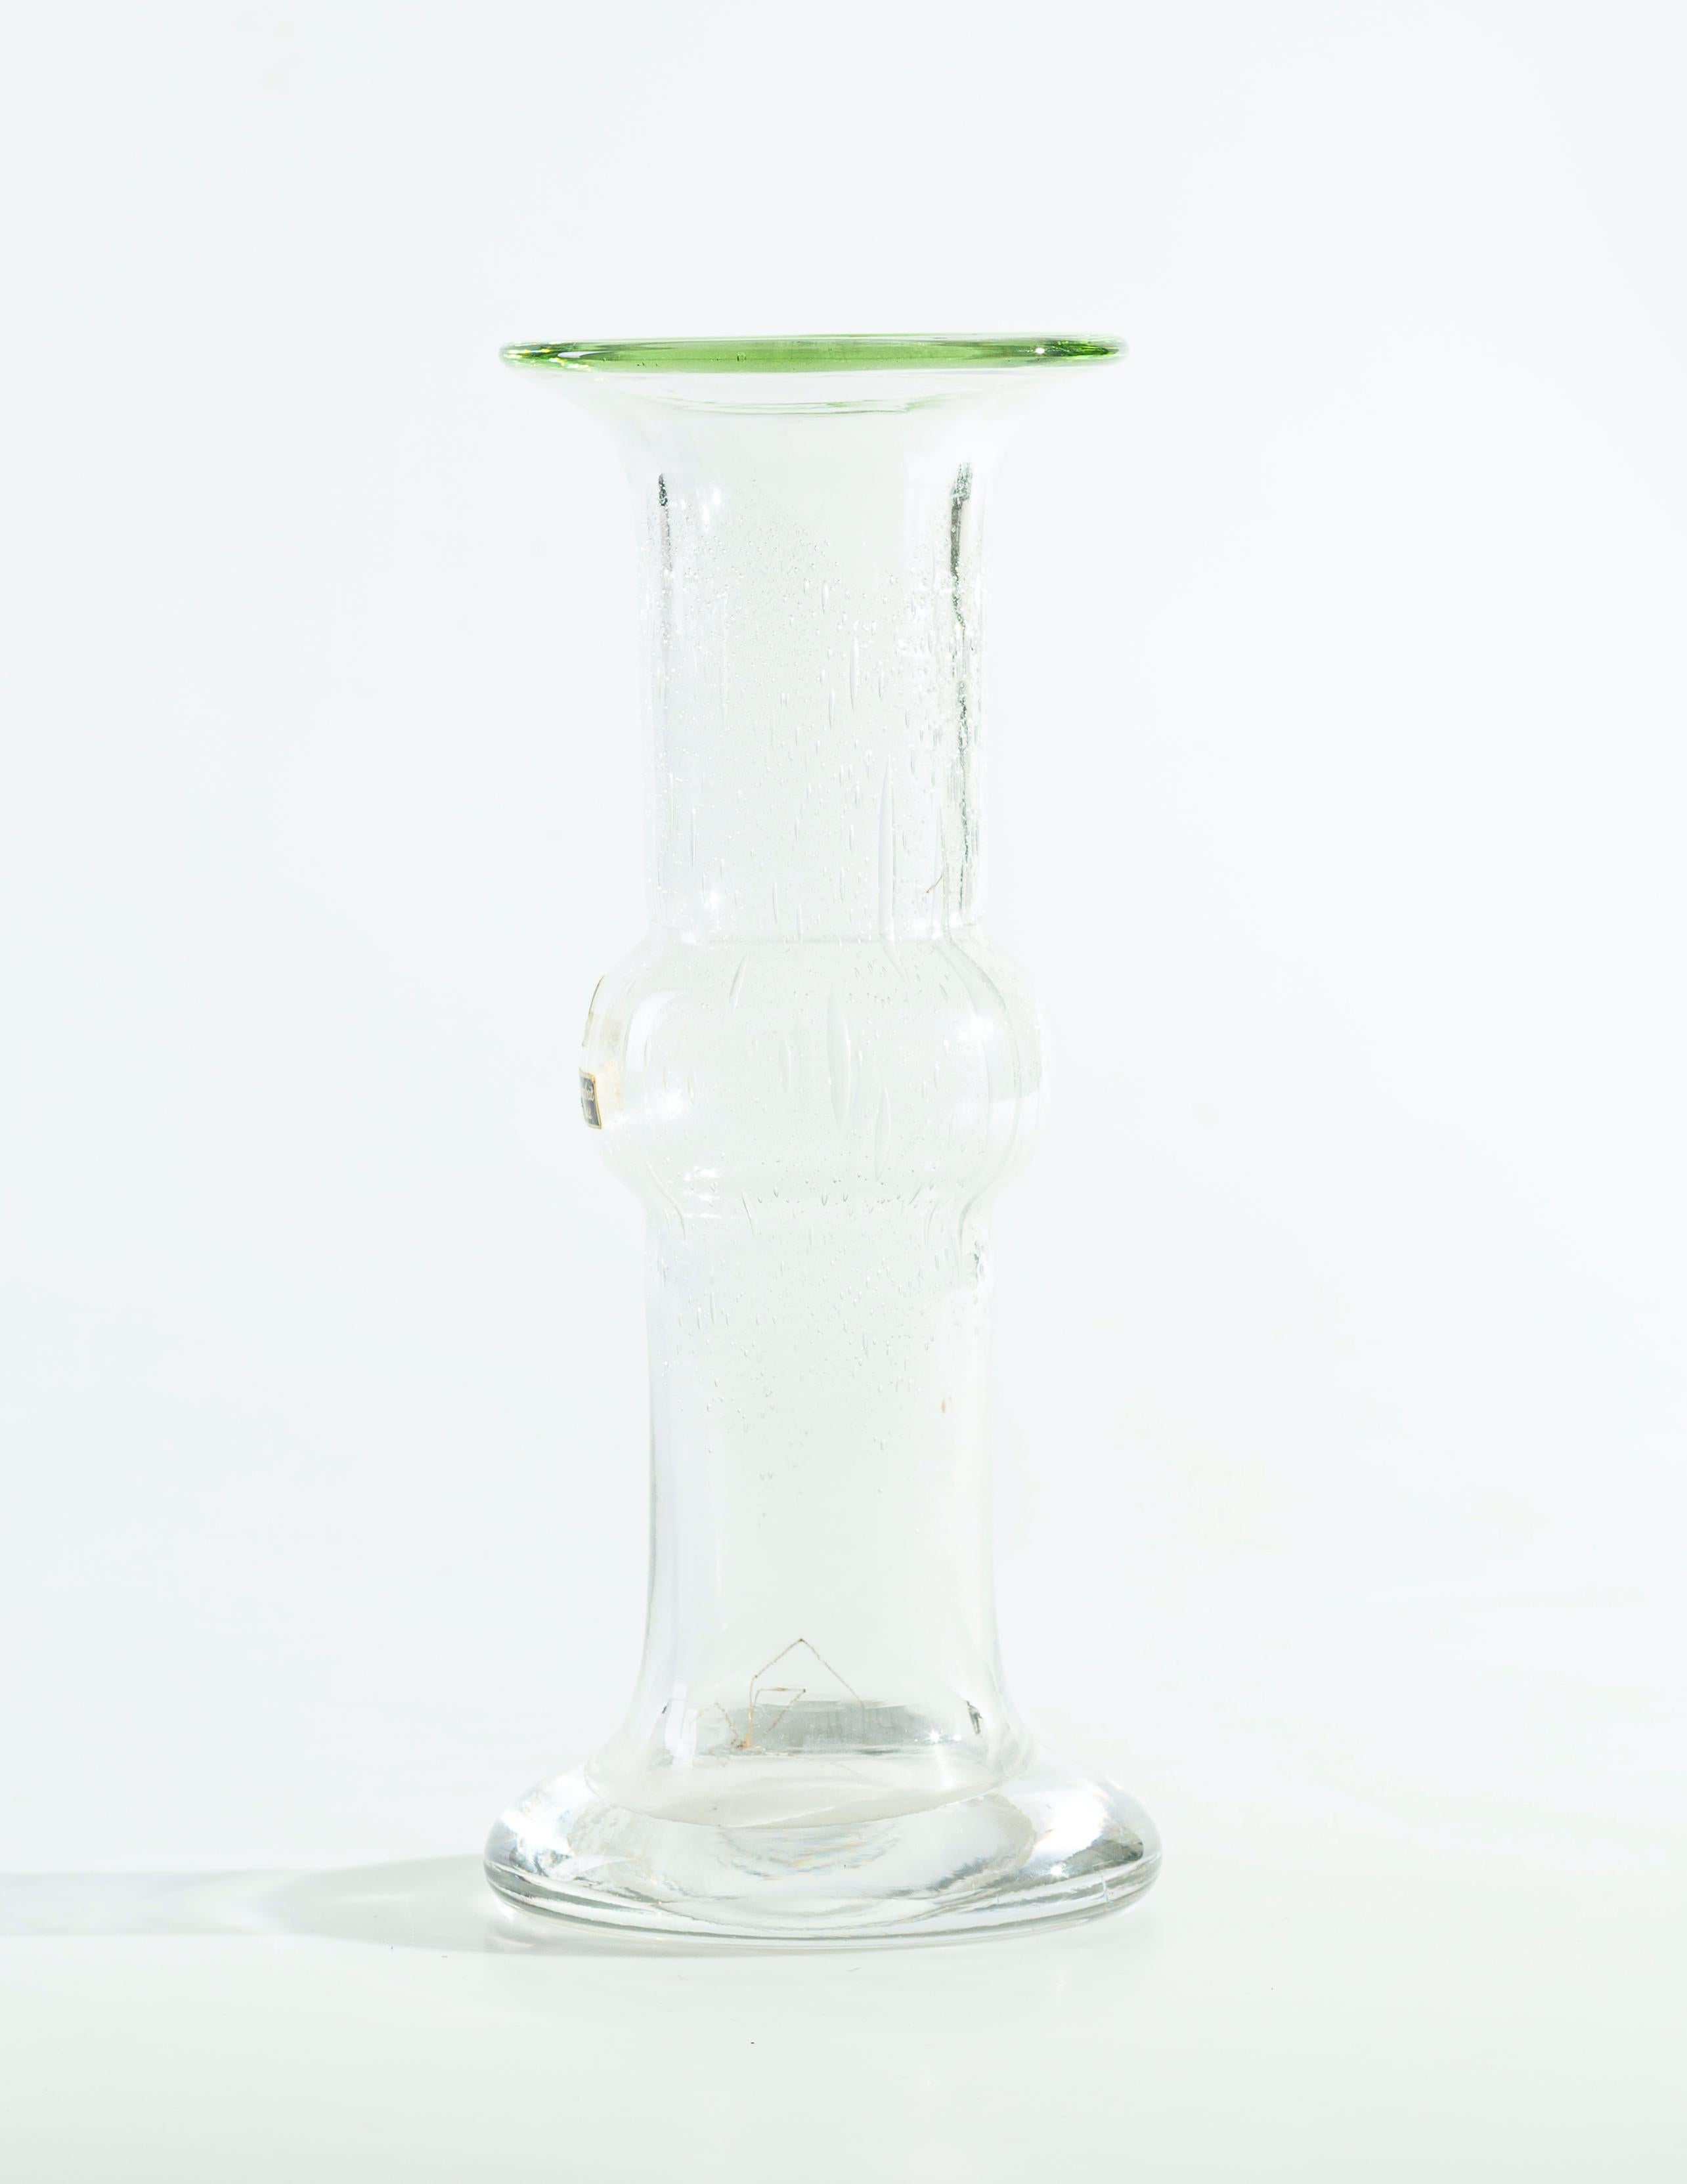 Diese Vintage-Vase aus deutschem Kunstglas wurde in den 1950er Jahren in Deutschland hergestellt und von Erwin Eisch entworfen. 

Eine Vase mit ausgestelltem Mund und Fuß, die zentrale Ausbuchtung am bauchigen Stiel. Das Glas ist transparent mit